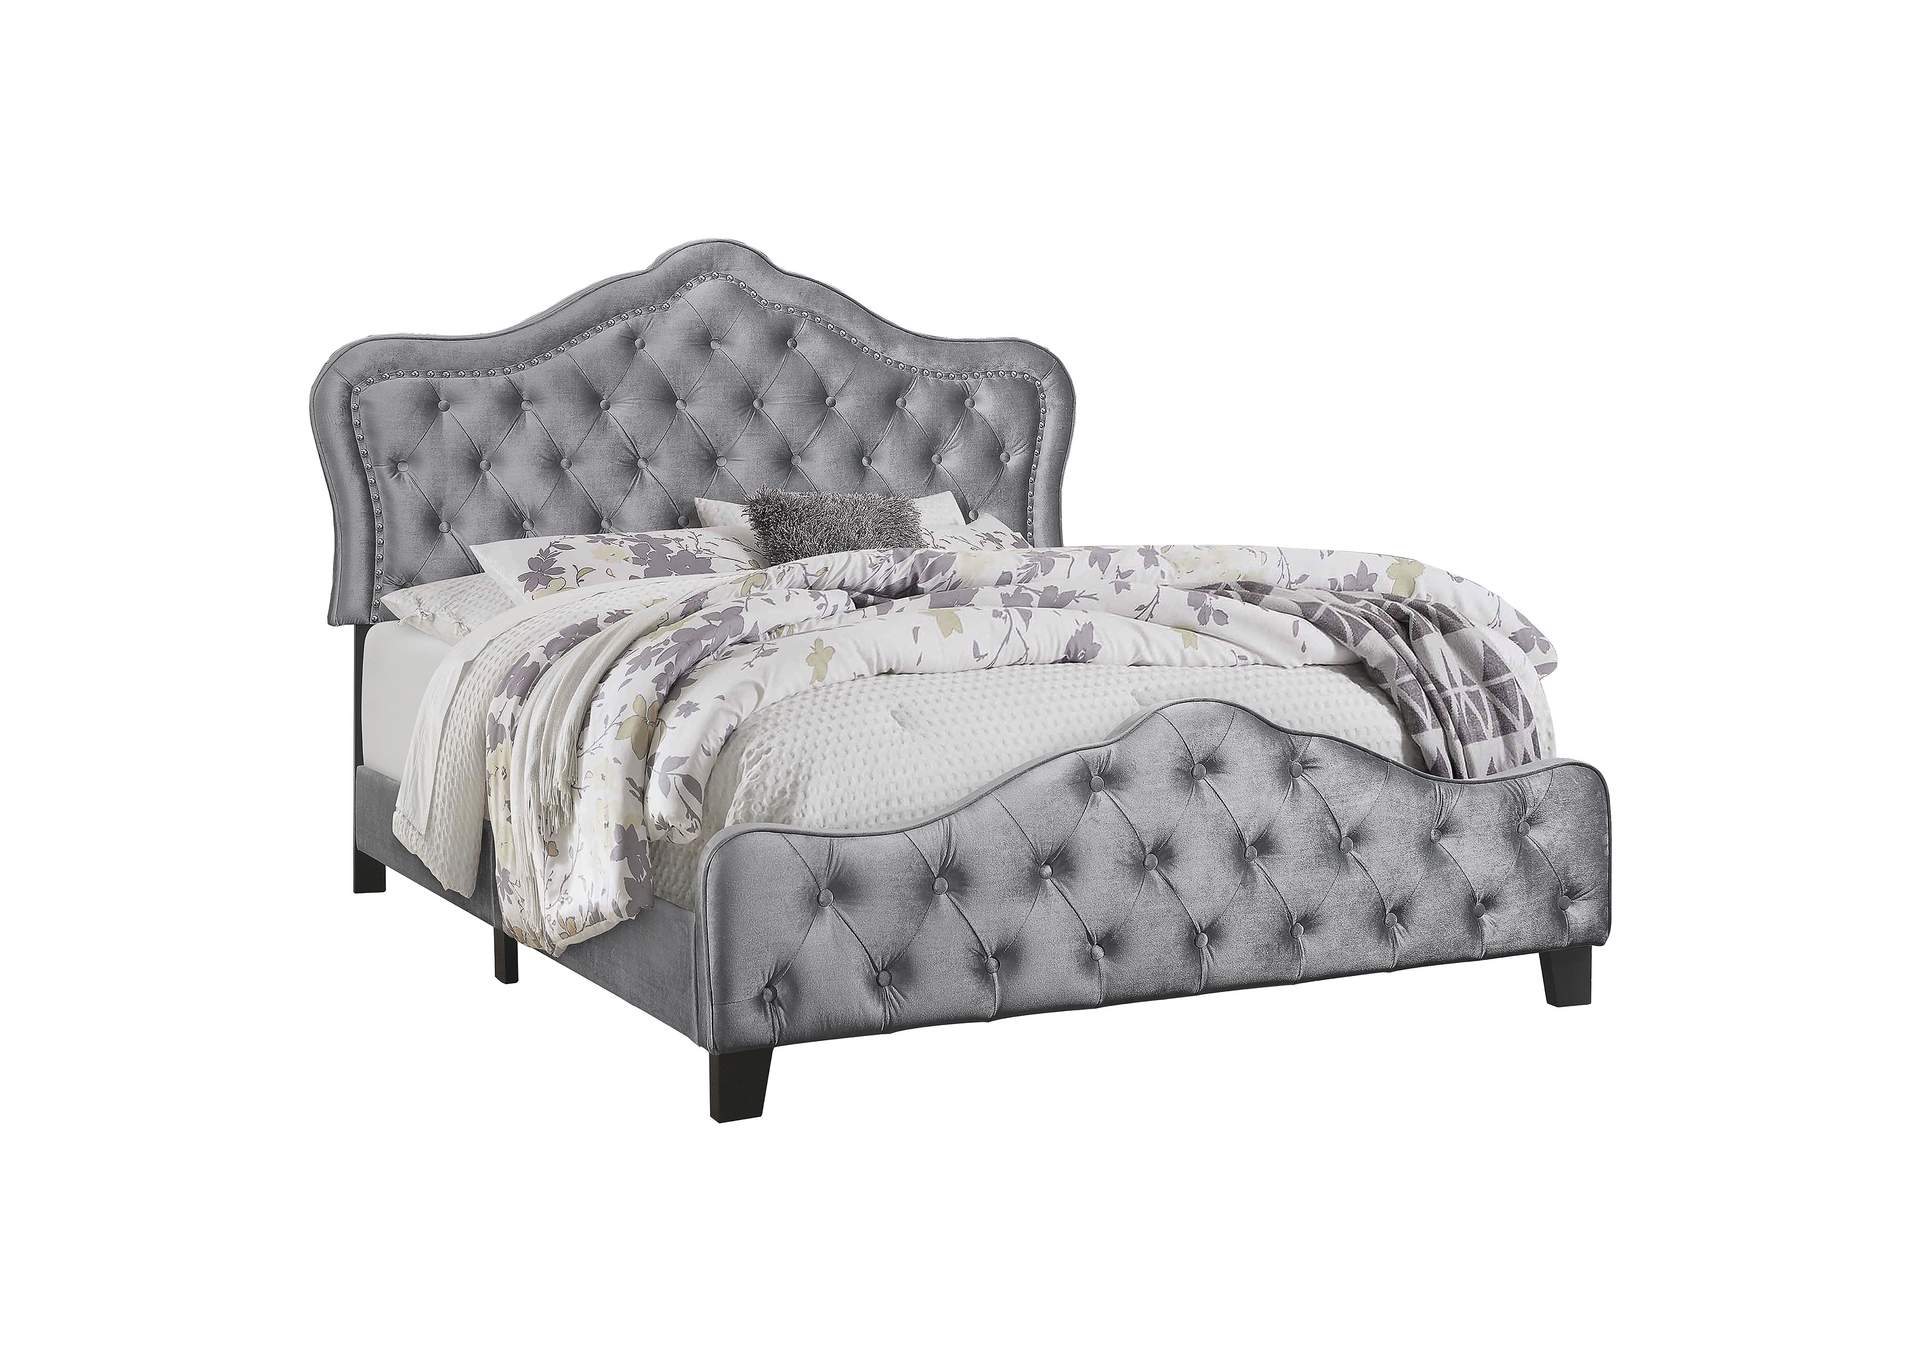 Bella Upholstered Tufted Panel Bed Grey,Coaster Furniture